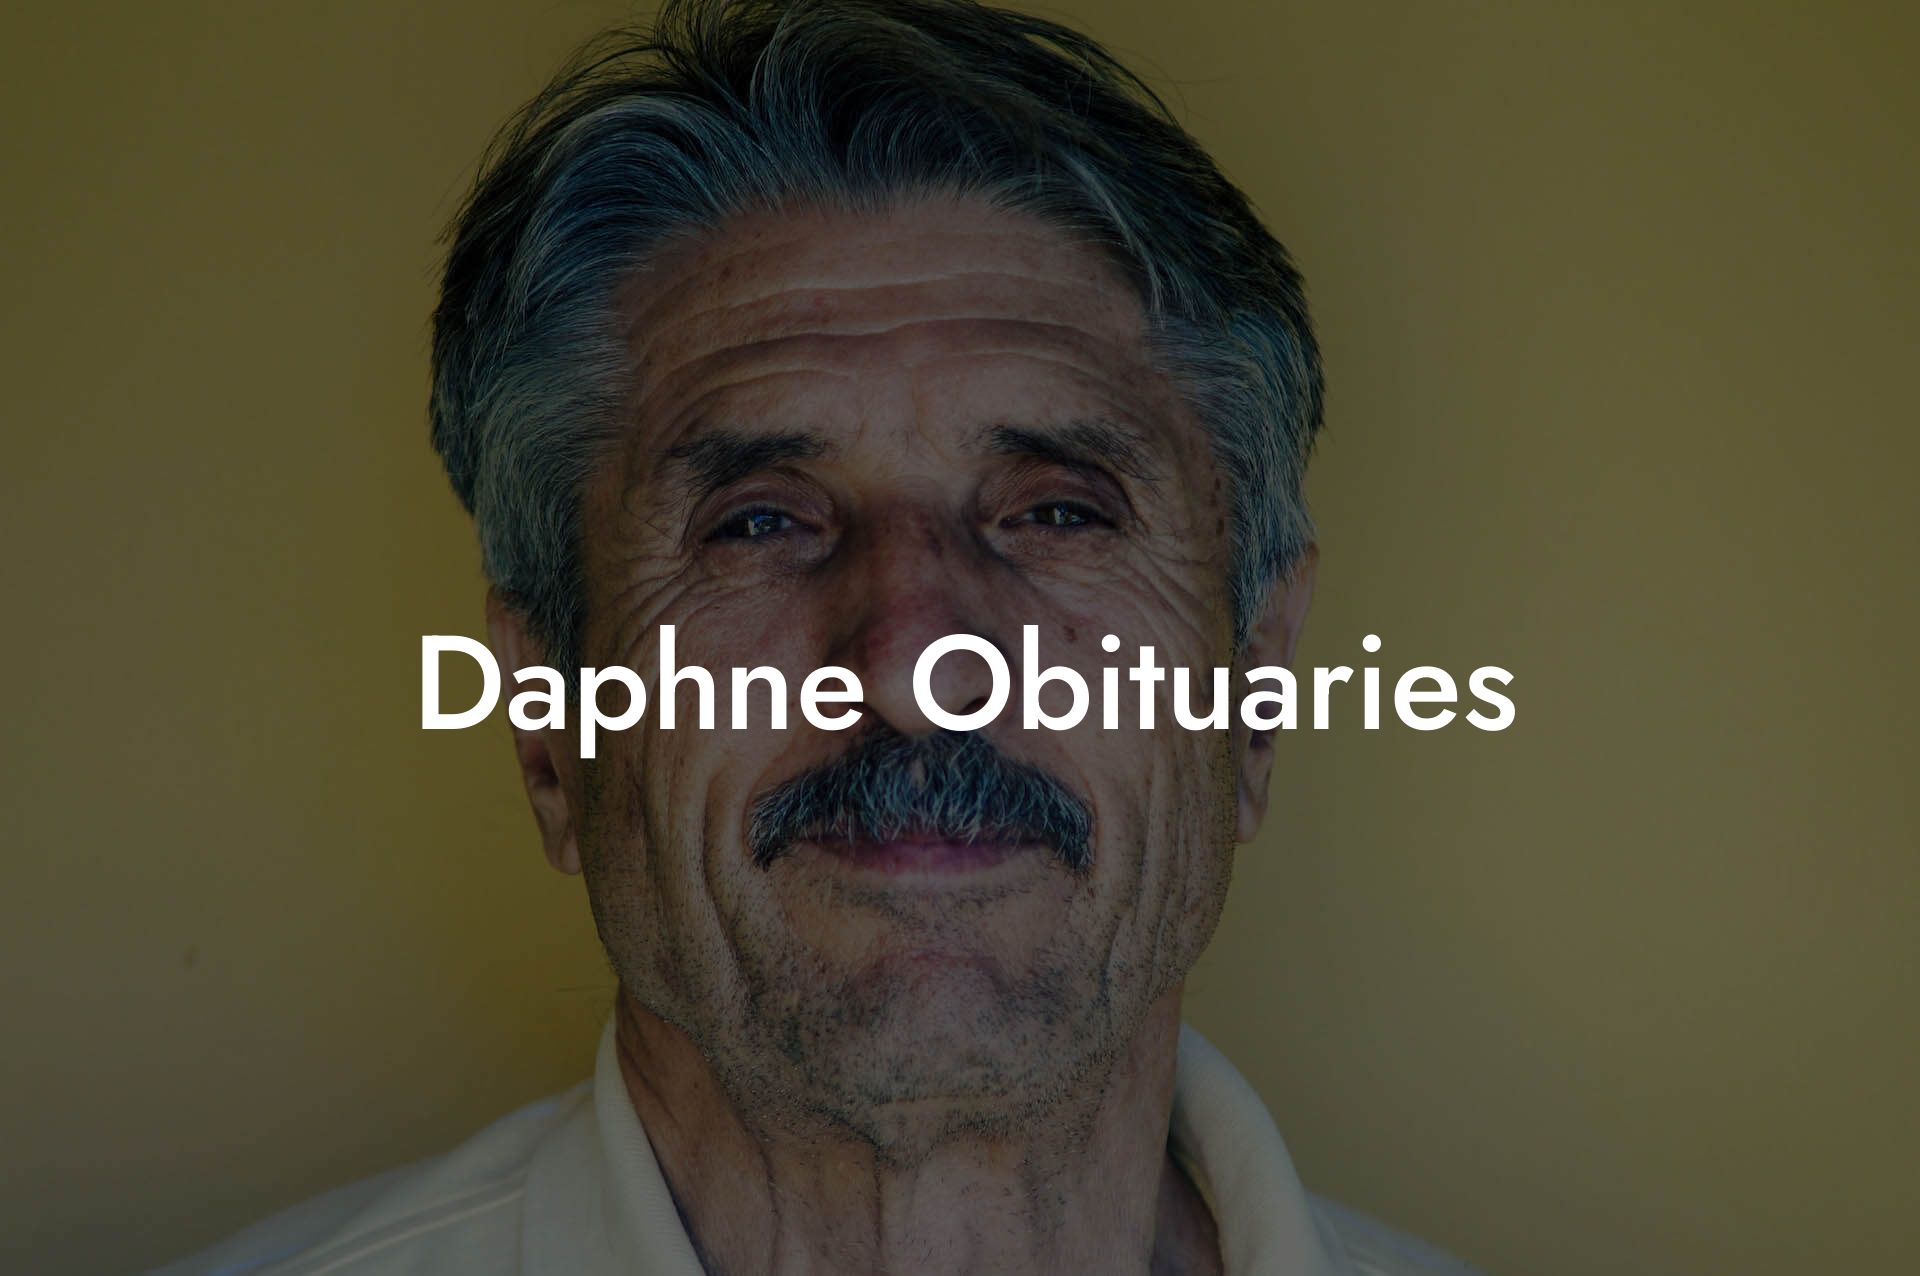 Daphne Obituaries